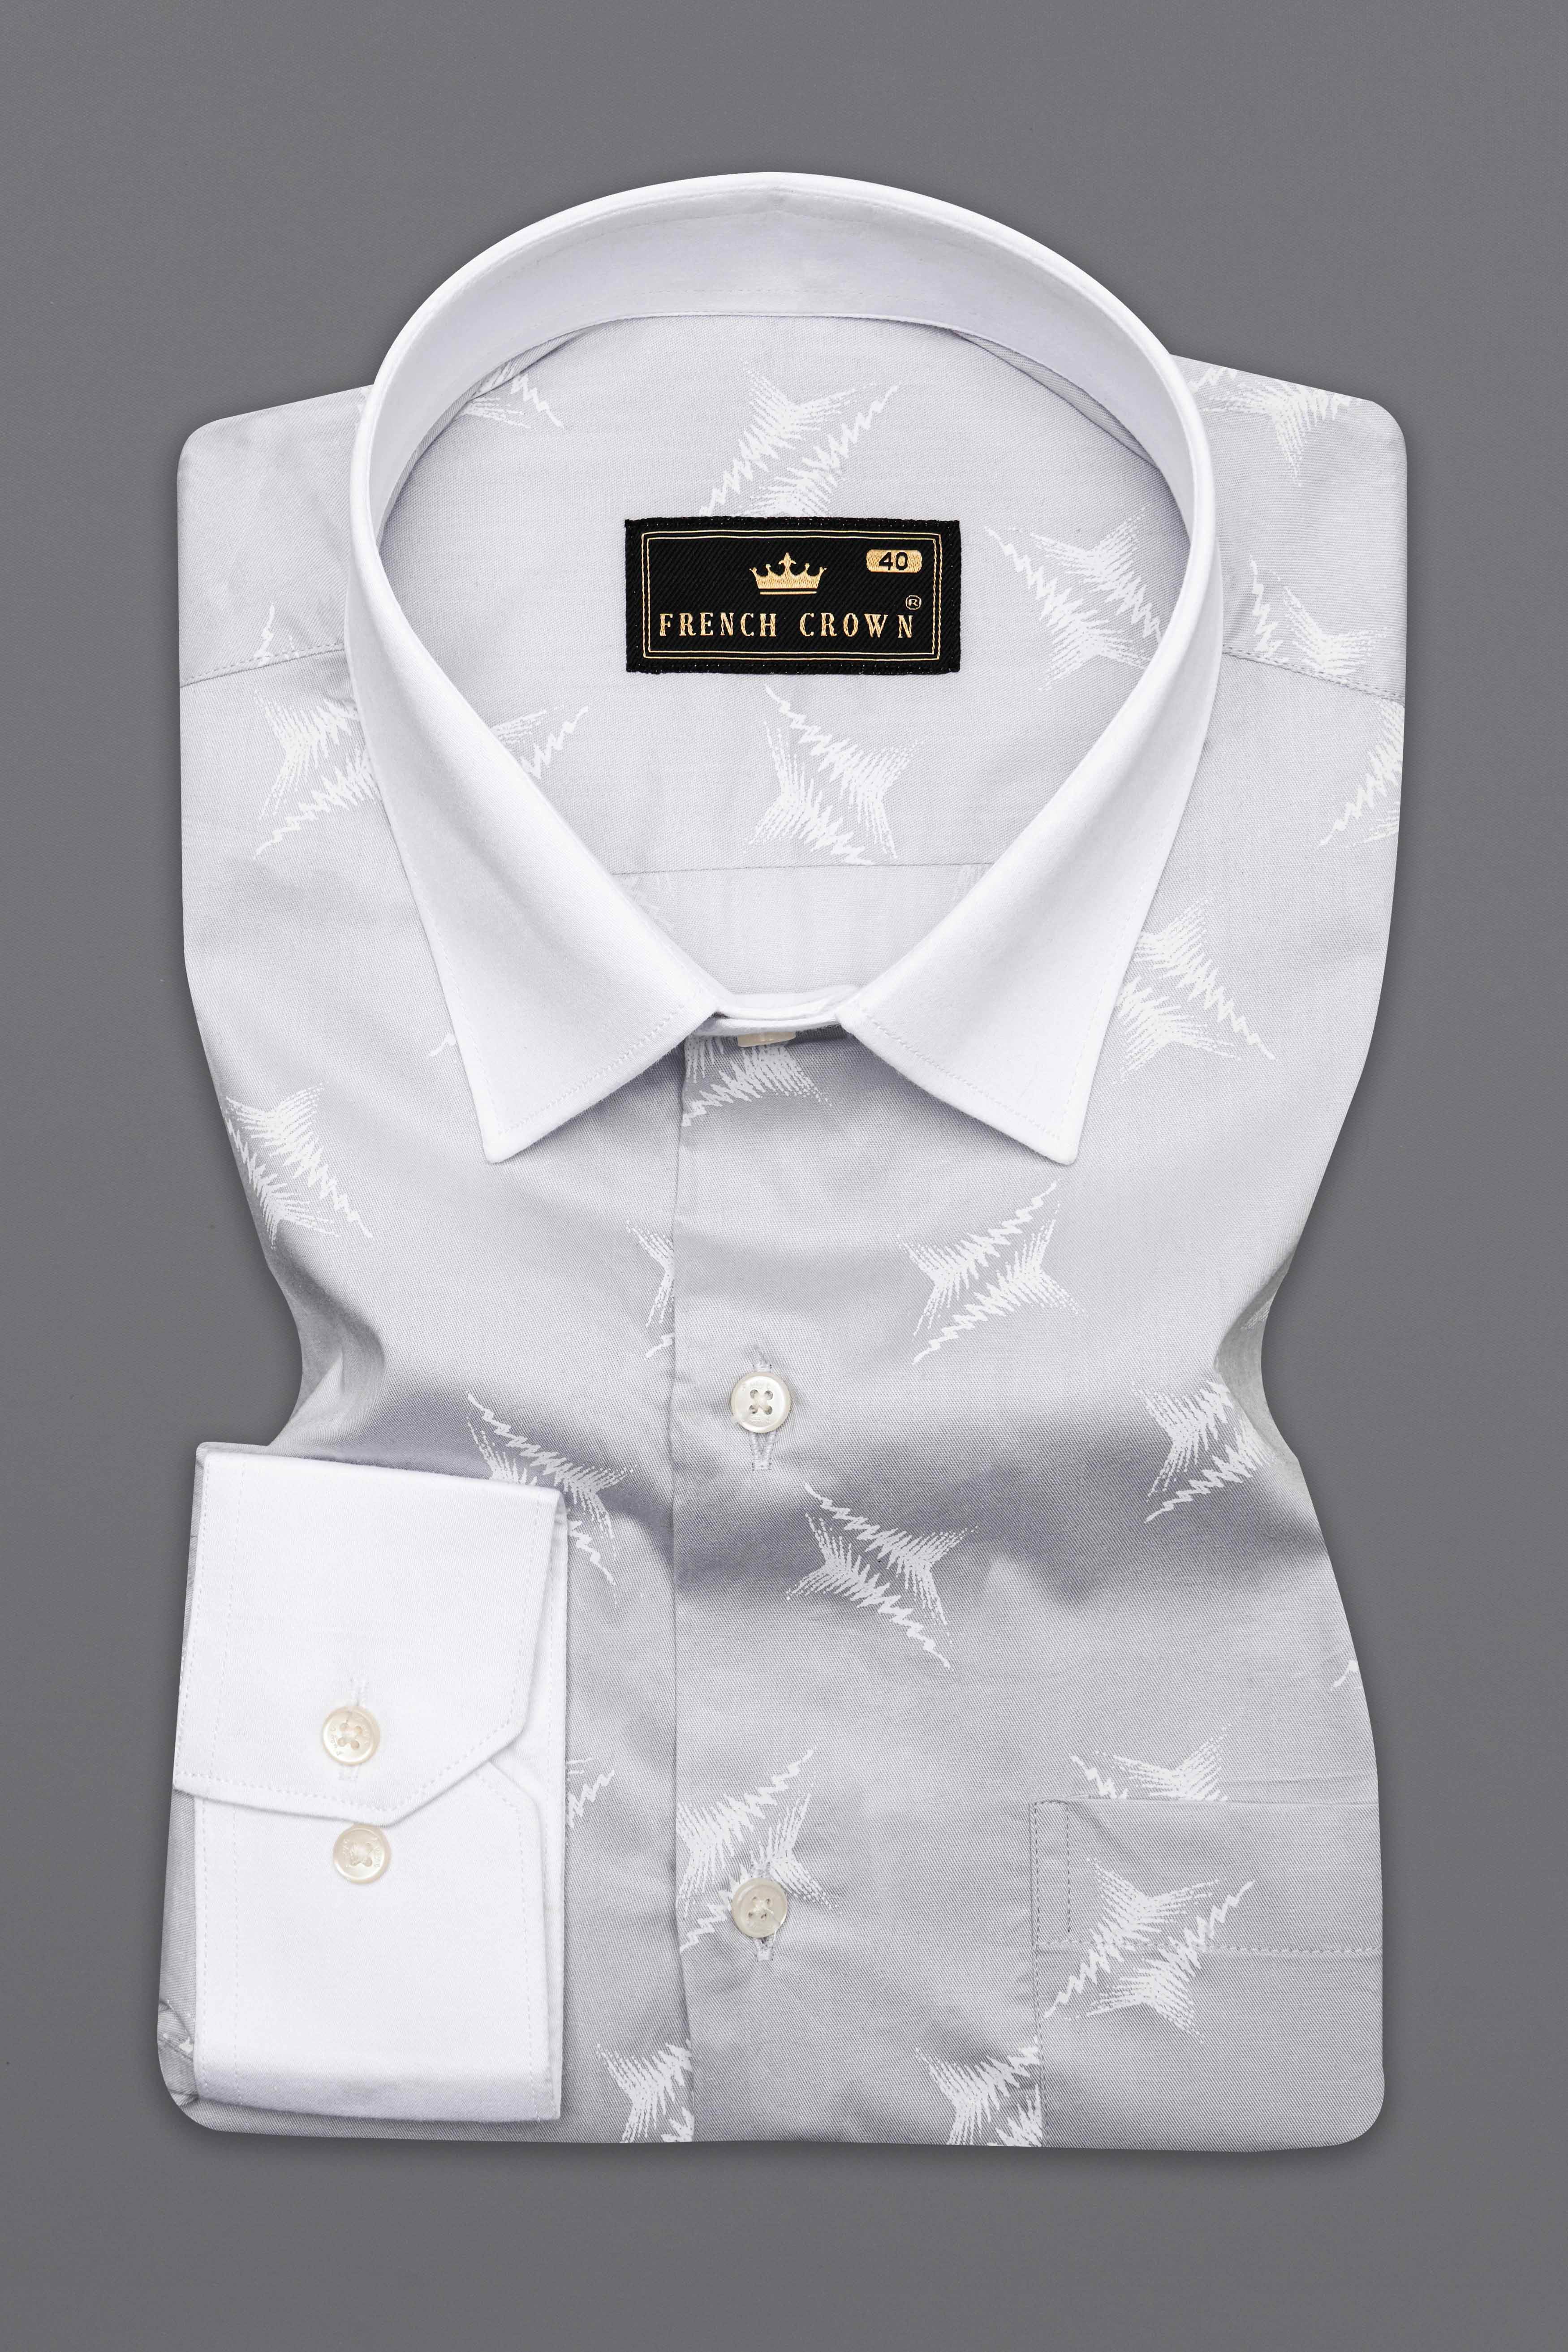 Pumice Gray and White Premium Cotton Shirt